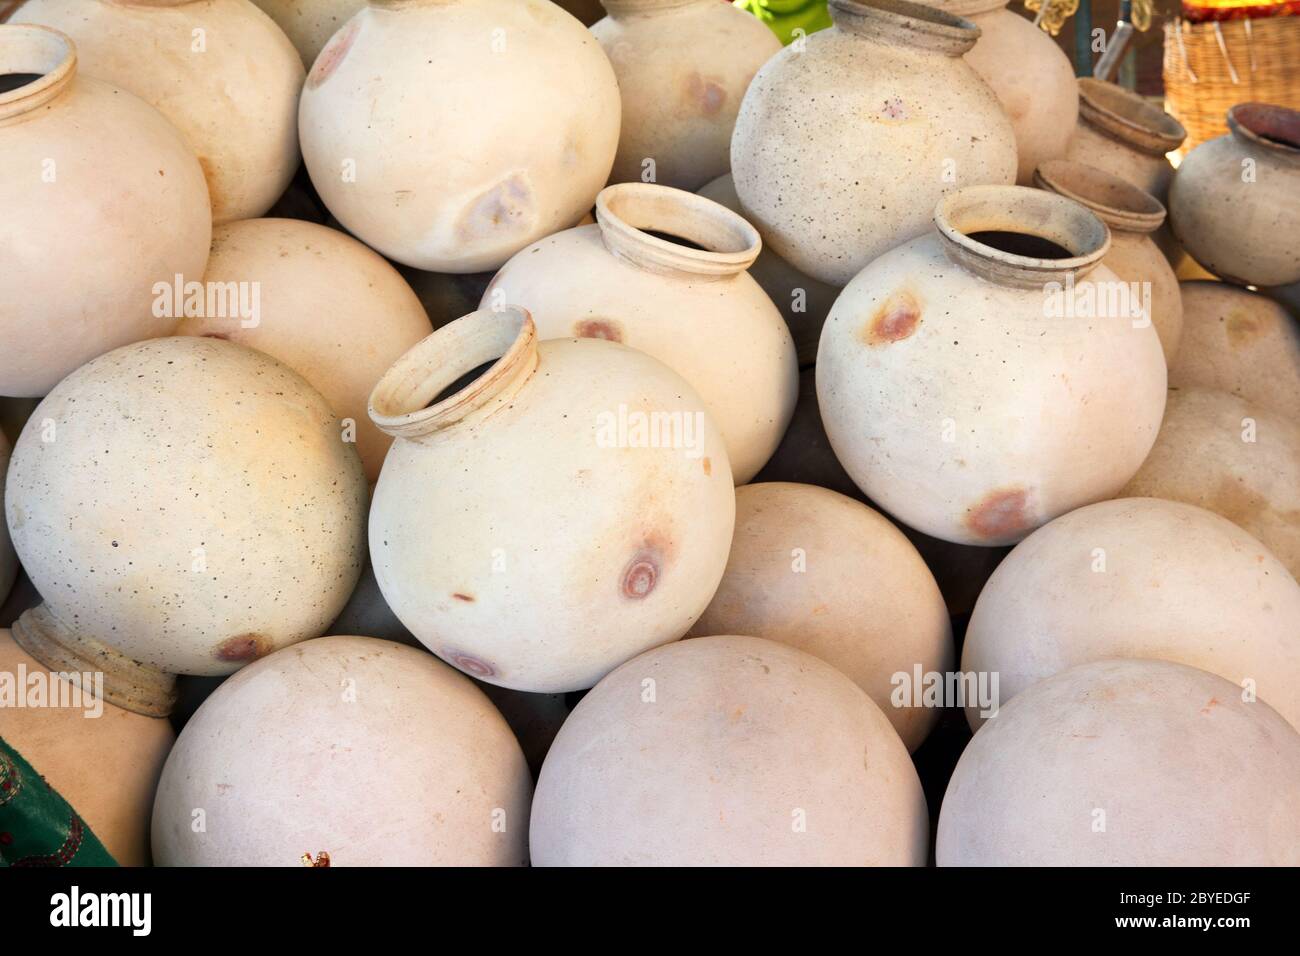 many clay pots in india Stock Photo